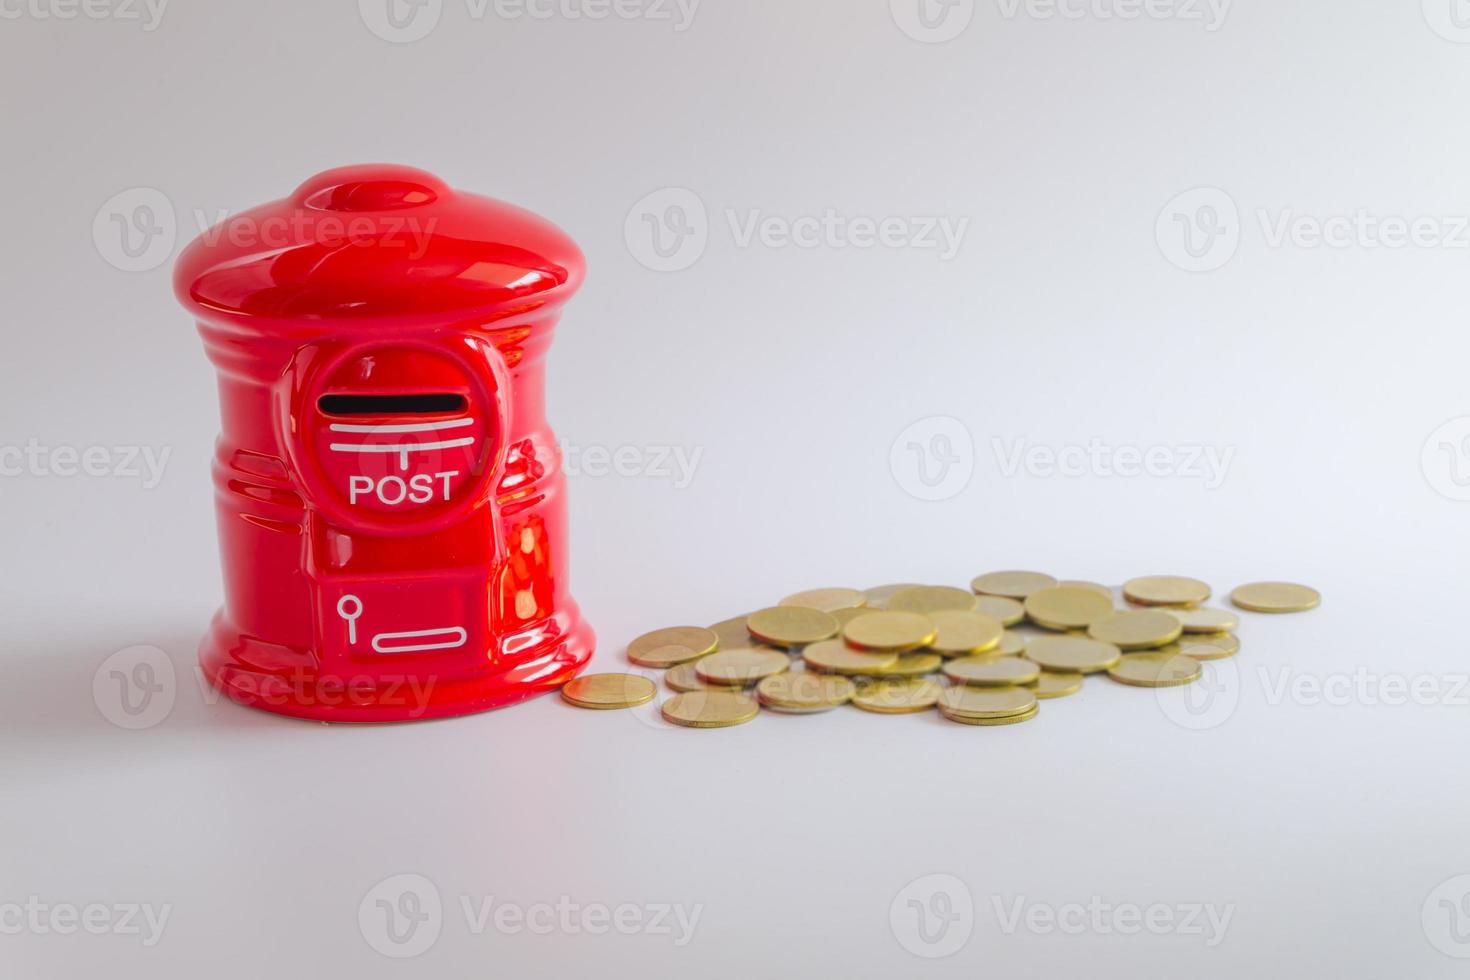 cofrinho ou caixa de dinheiro em forma de caixa de correio vermelha com pilha de moedas de dinheiro crescendo em fundo branco, foco seletivo foto